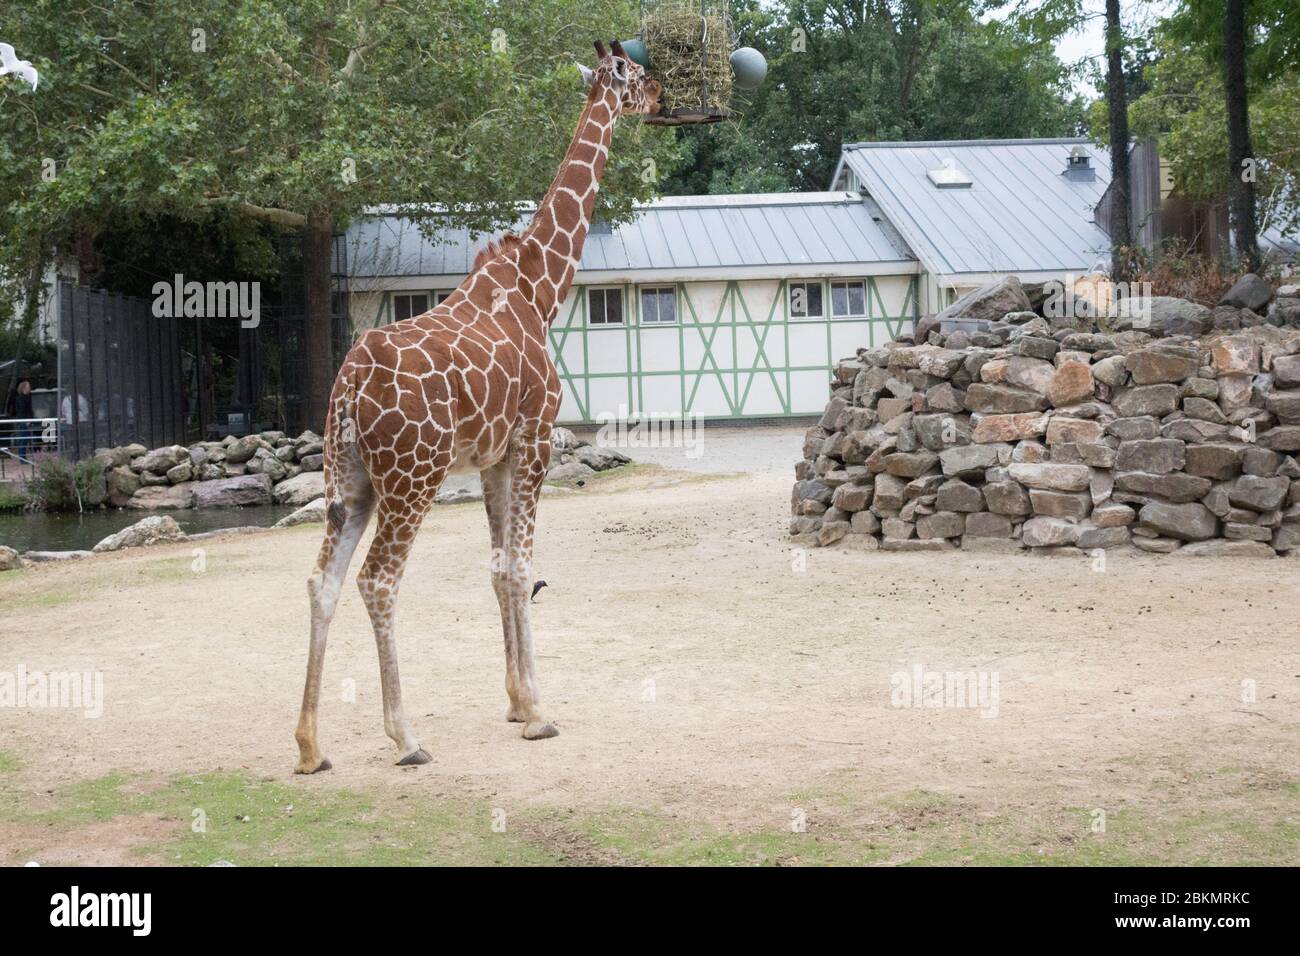 Majestätische Giraffen in holländischen Zoos: Von beliebten Attraktionen bis hin zu Botschaftern für den Naturschutz, von fesselnden Besuchern bis hin zur Förderung von Naturschutzmaßnahmen Stockfoto